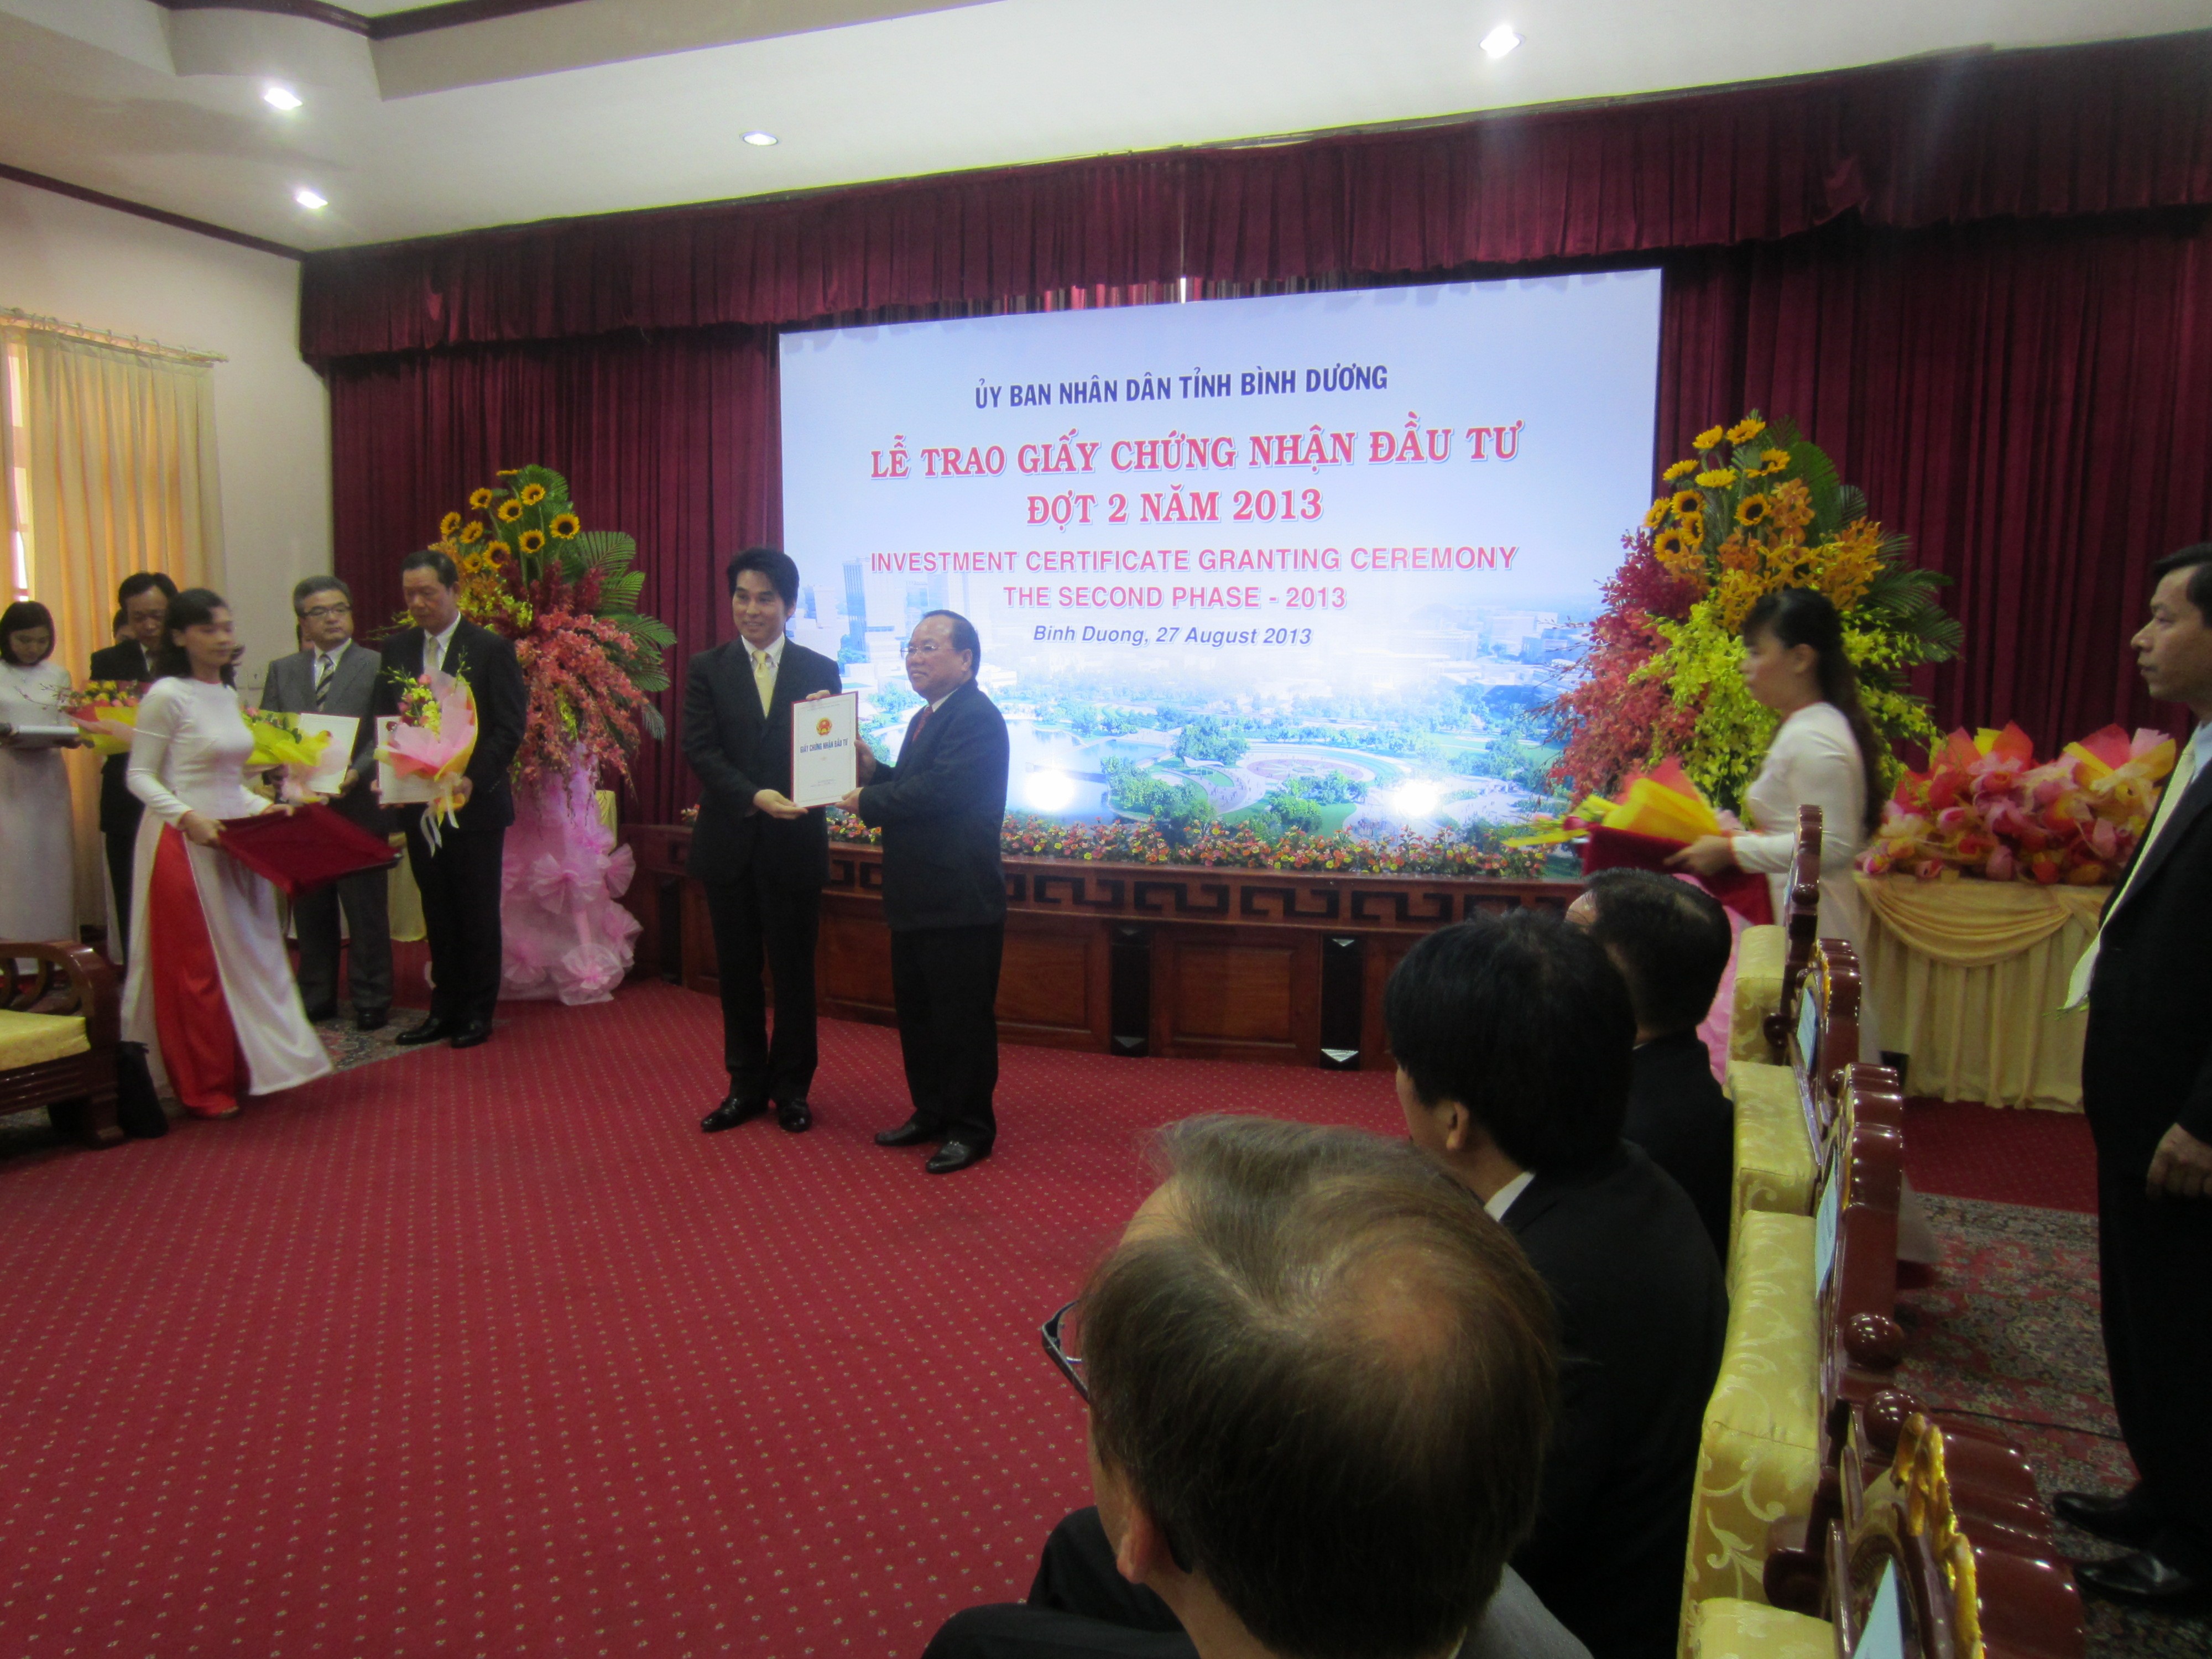 Lễ trao giấy chứng nhận đầu tư đợt 2 năm 2013